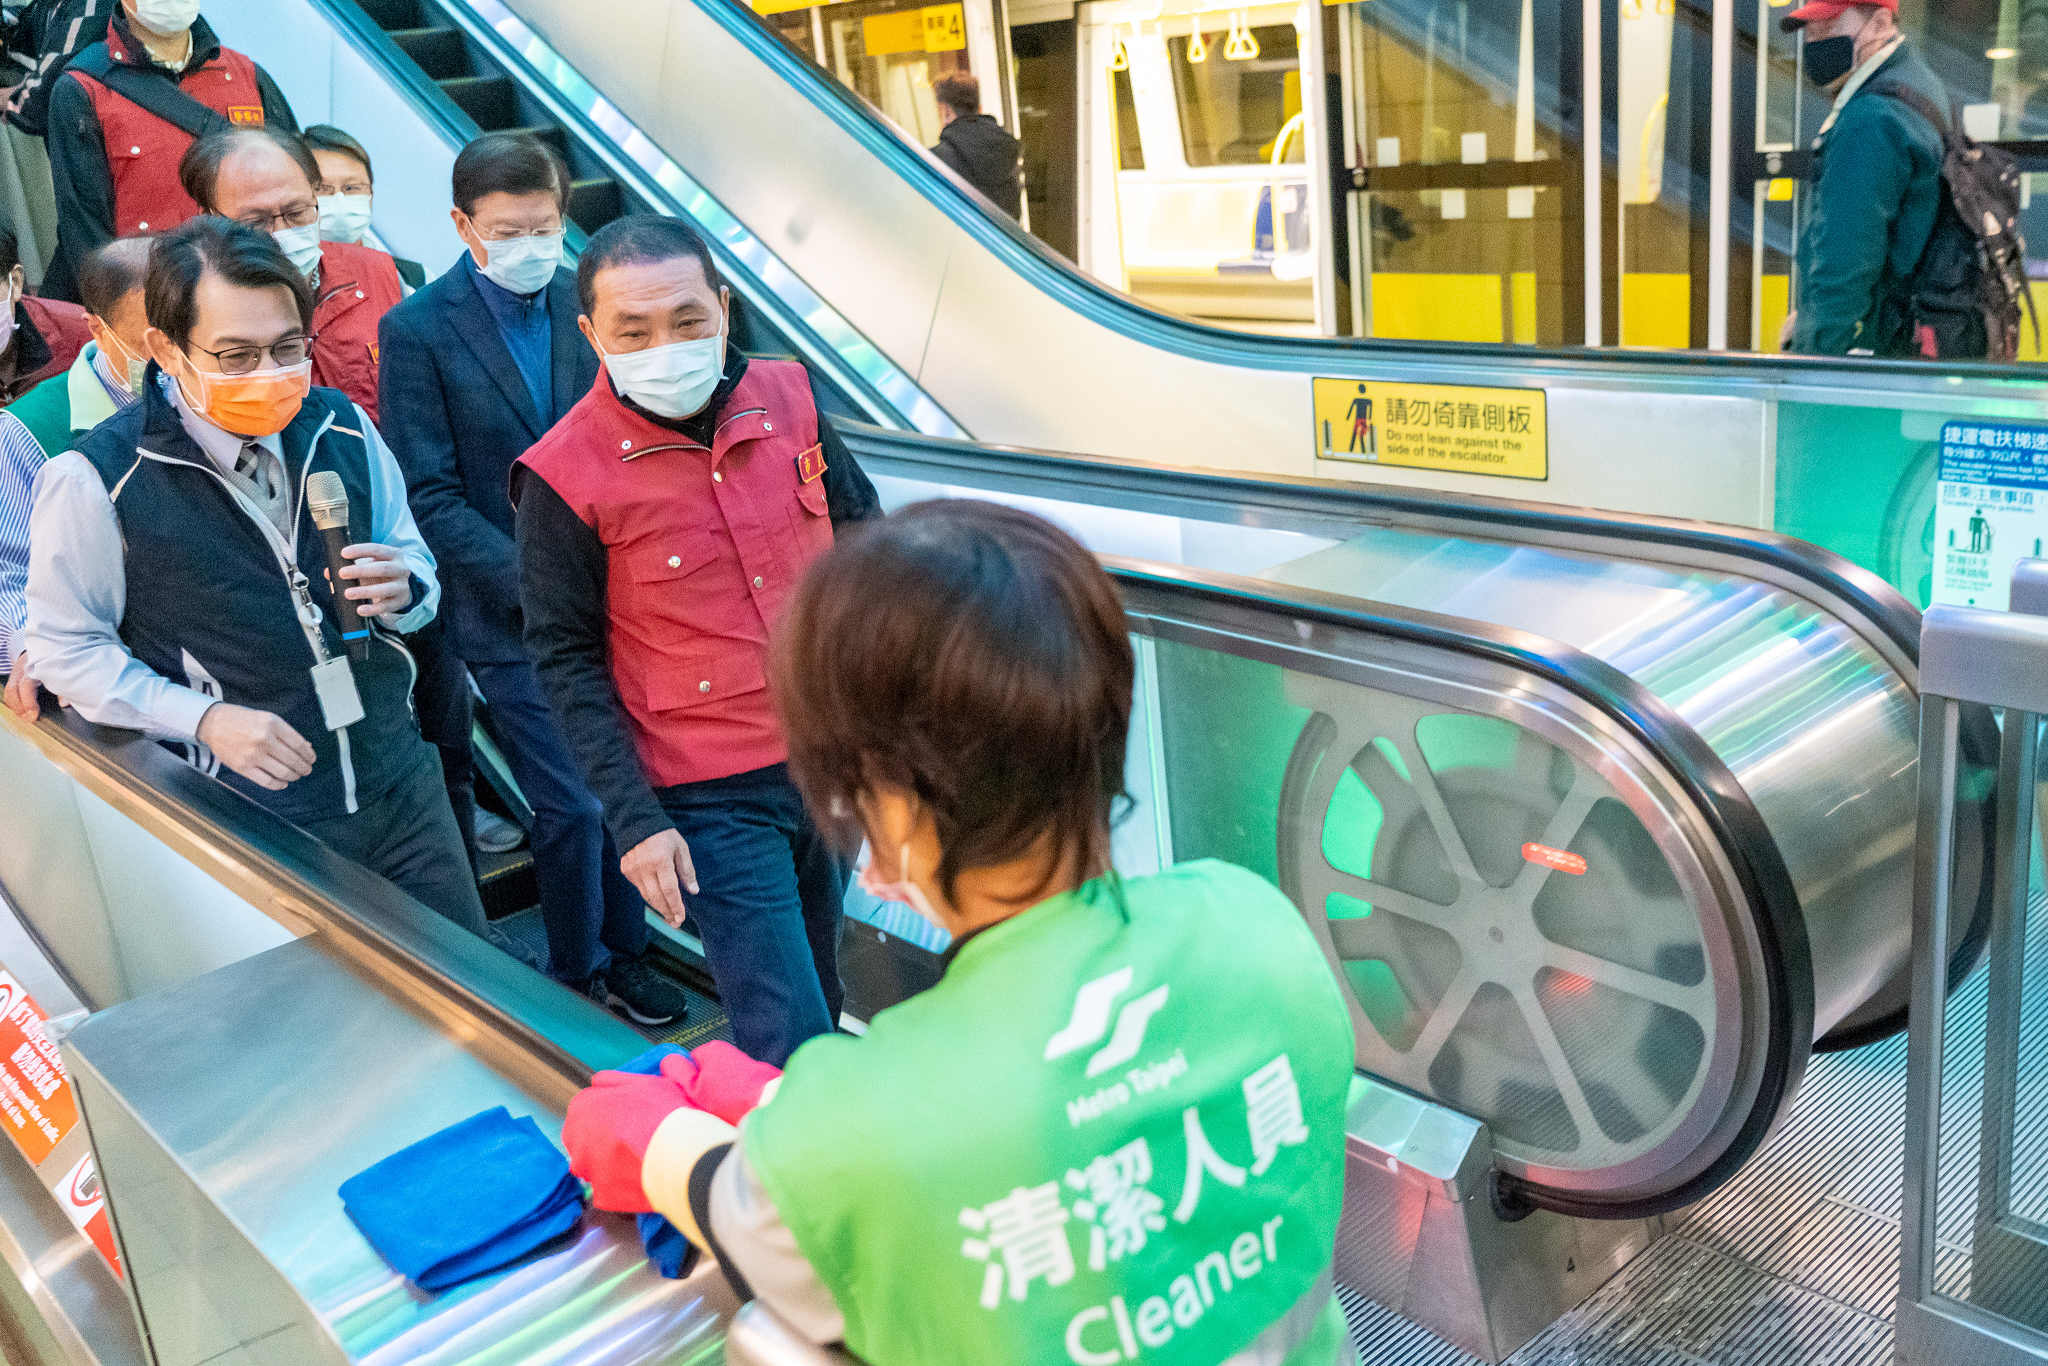 新北捷運環狀線特別針對與旅客接觸最密切的車廂、電扶梯、加值機、驗票閘門及廁所加強清消